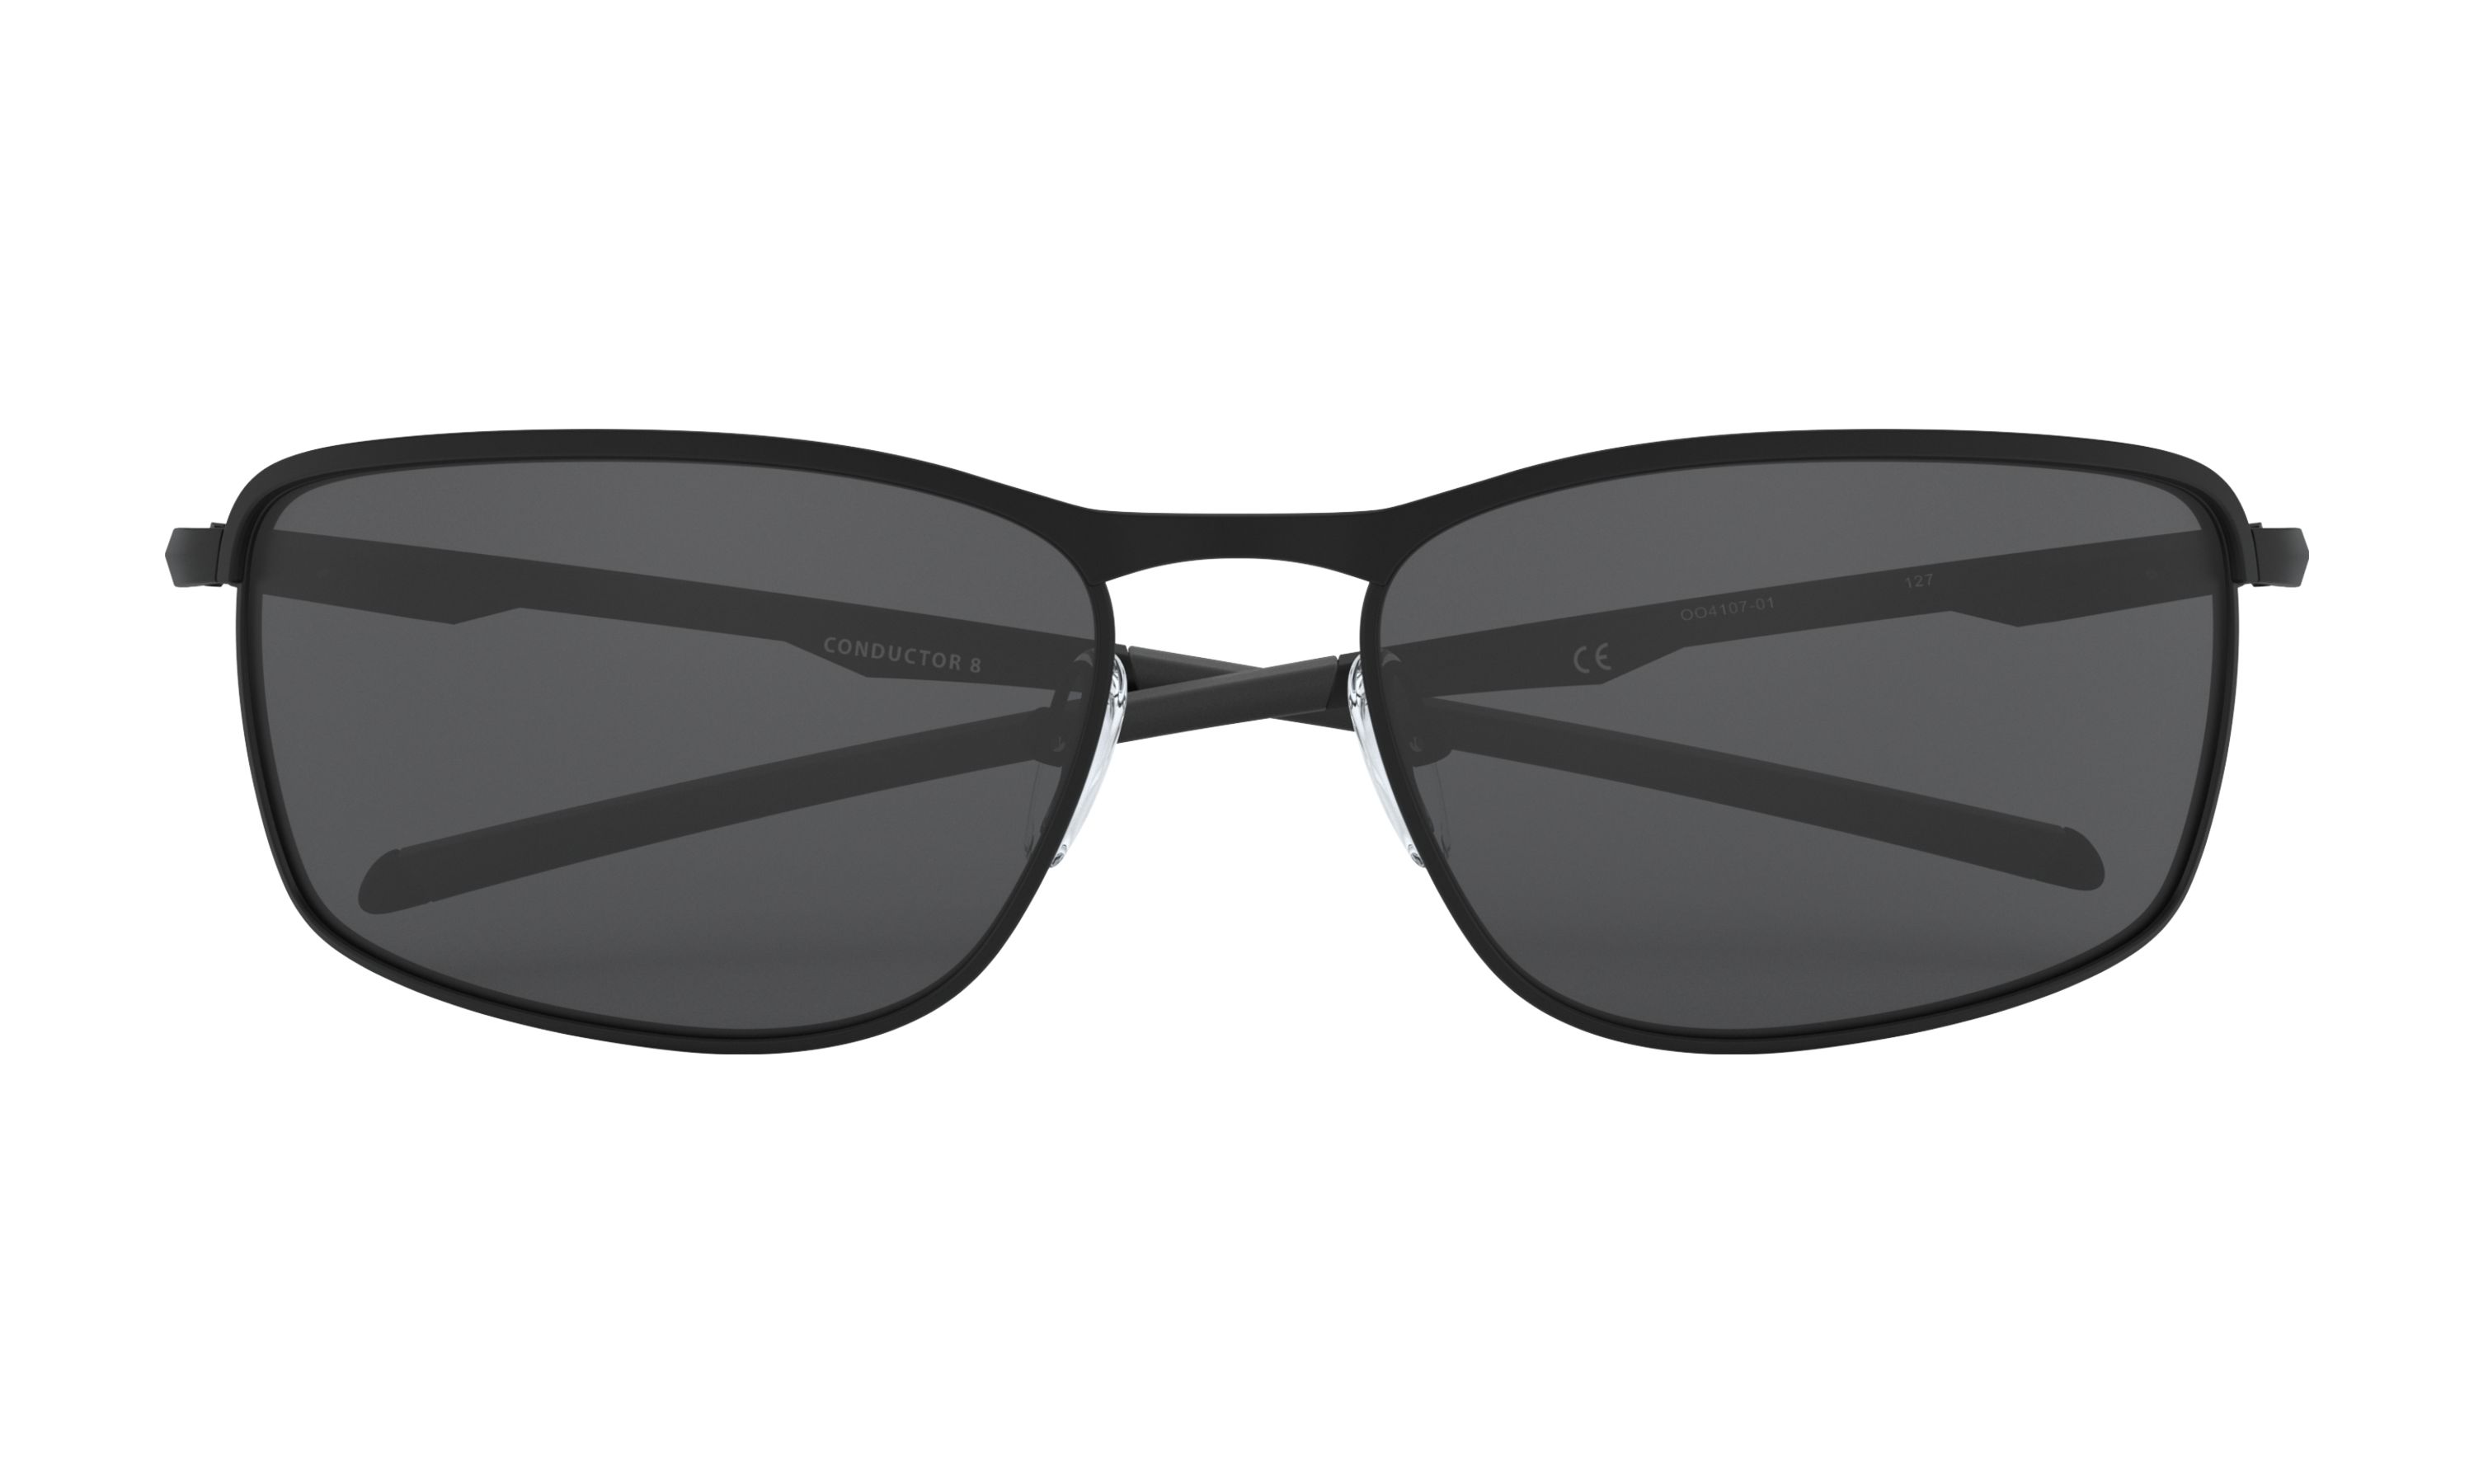 oakley conductor 8 prescription sunglasses